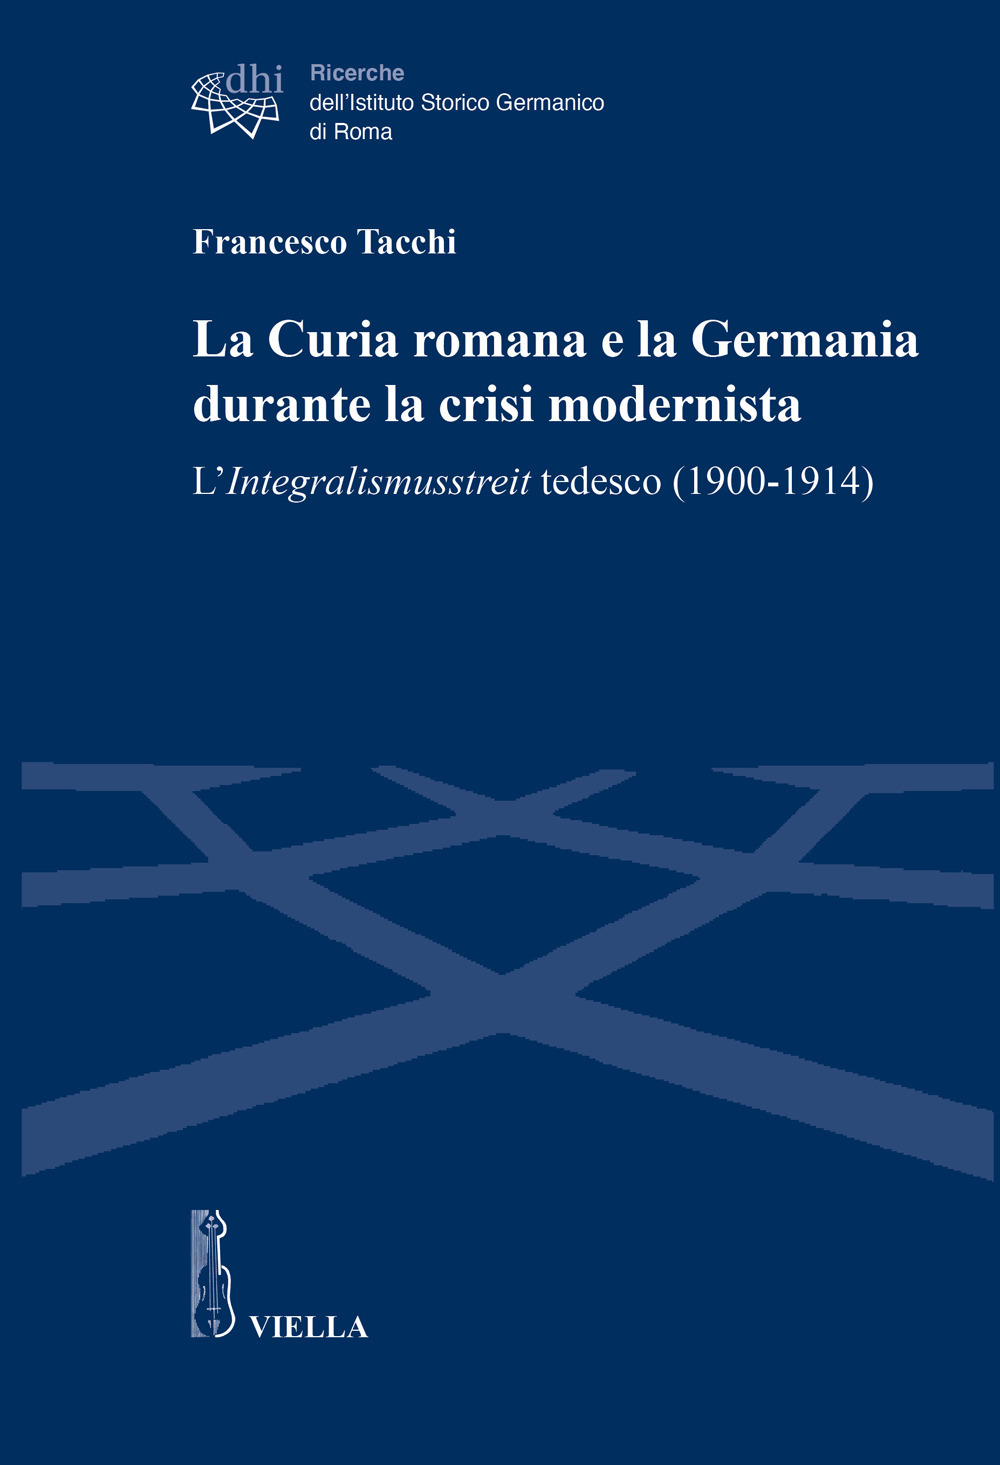 La Curia romana e la Germania durante la crisi modernista. L'Integralismusstreit tedesco (1900-1914)